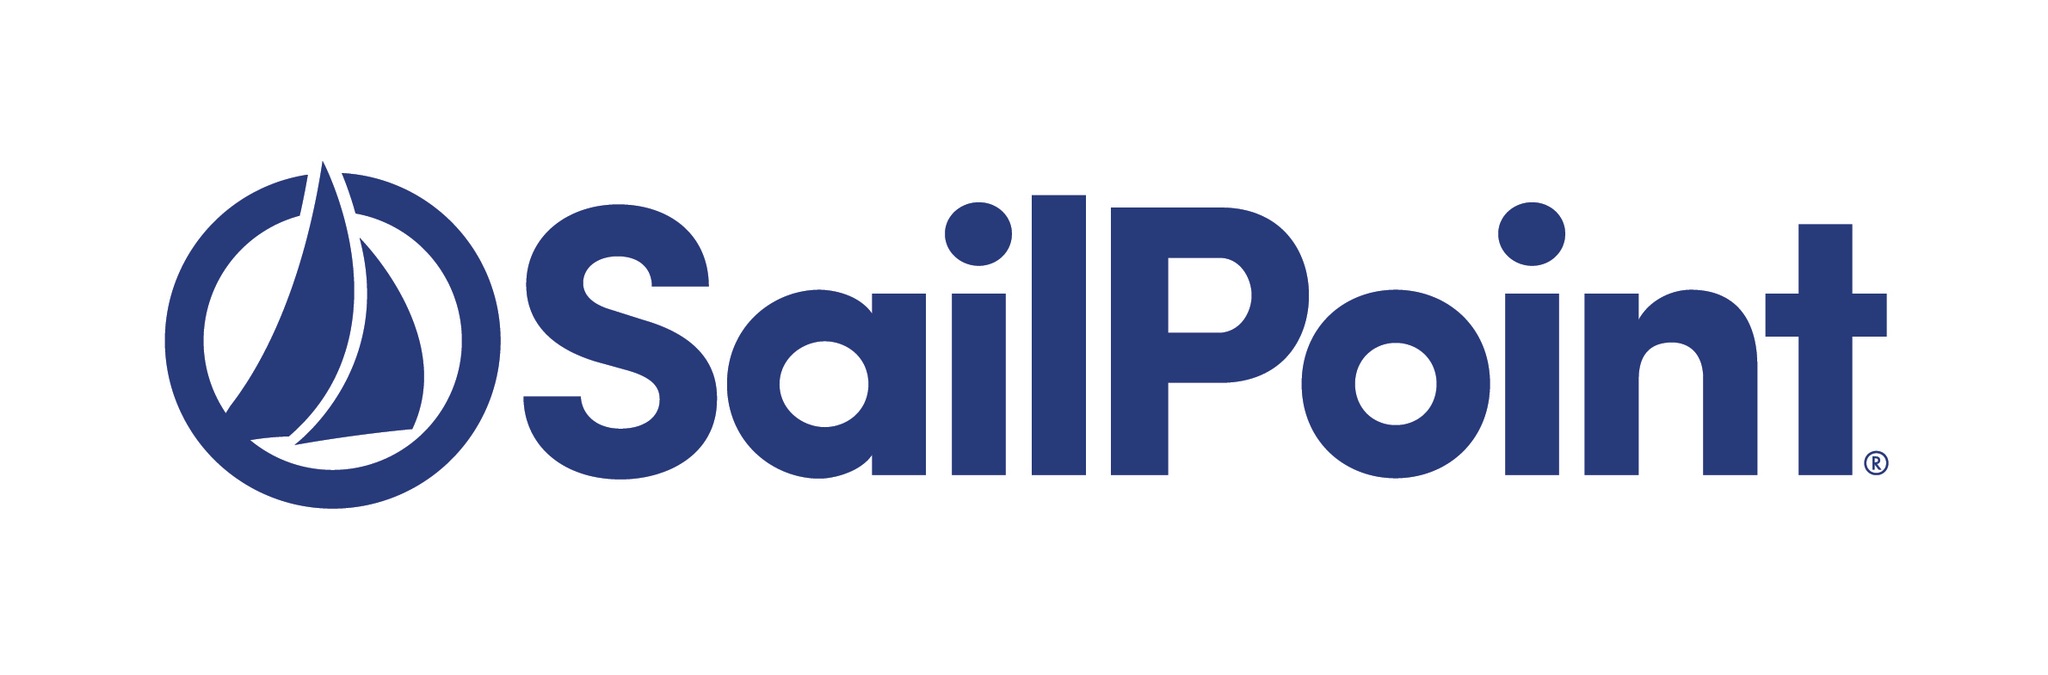 sailpoint1a.jpg